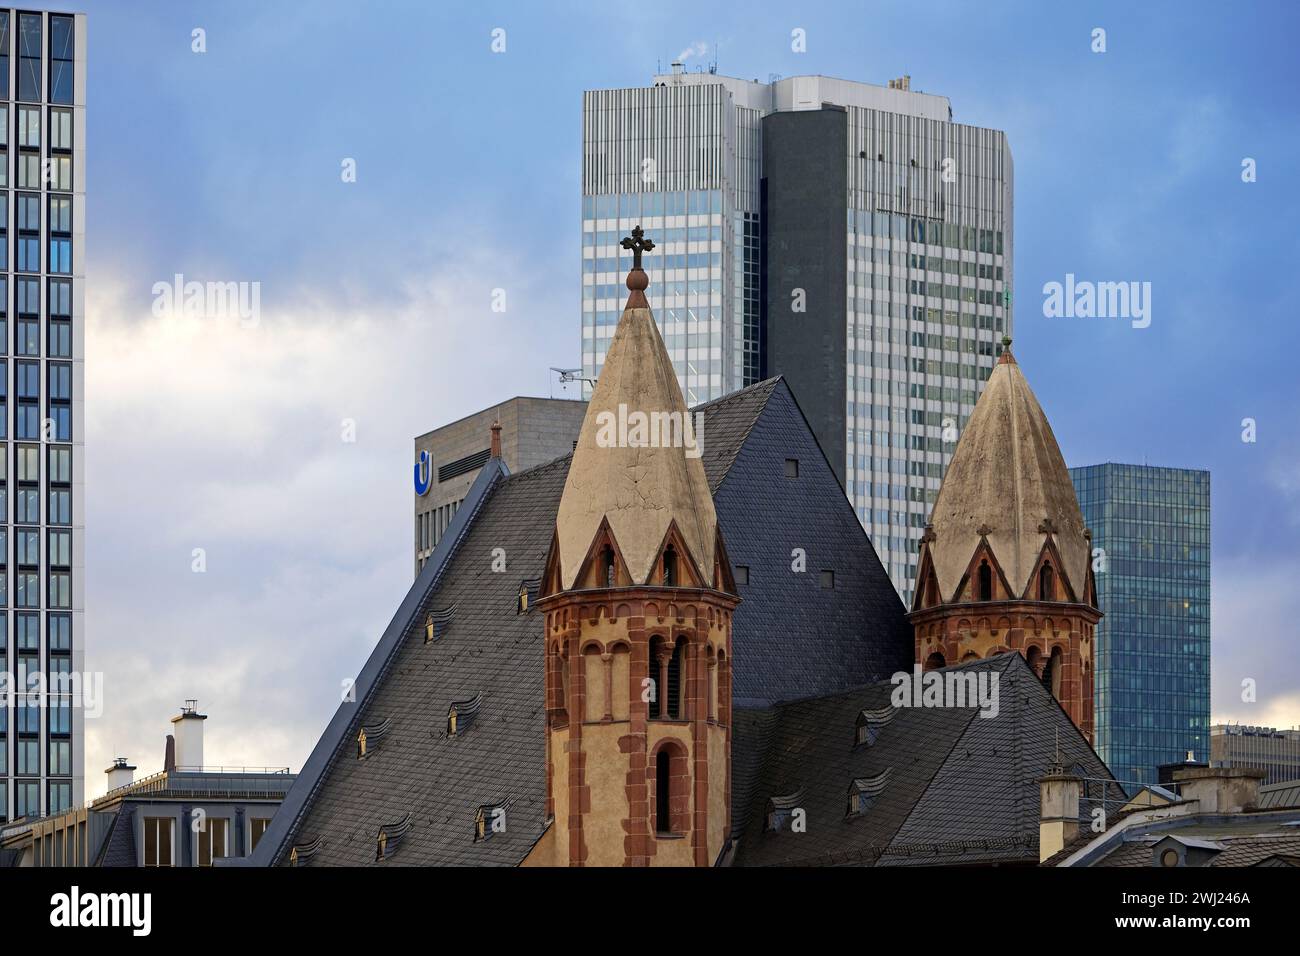 Alte St. Leonhardskirche vor modernen Hochhäusern, Frankfurt am Main, Deutschland, Europa Stockfoto